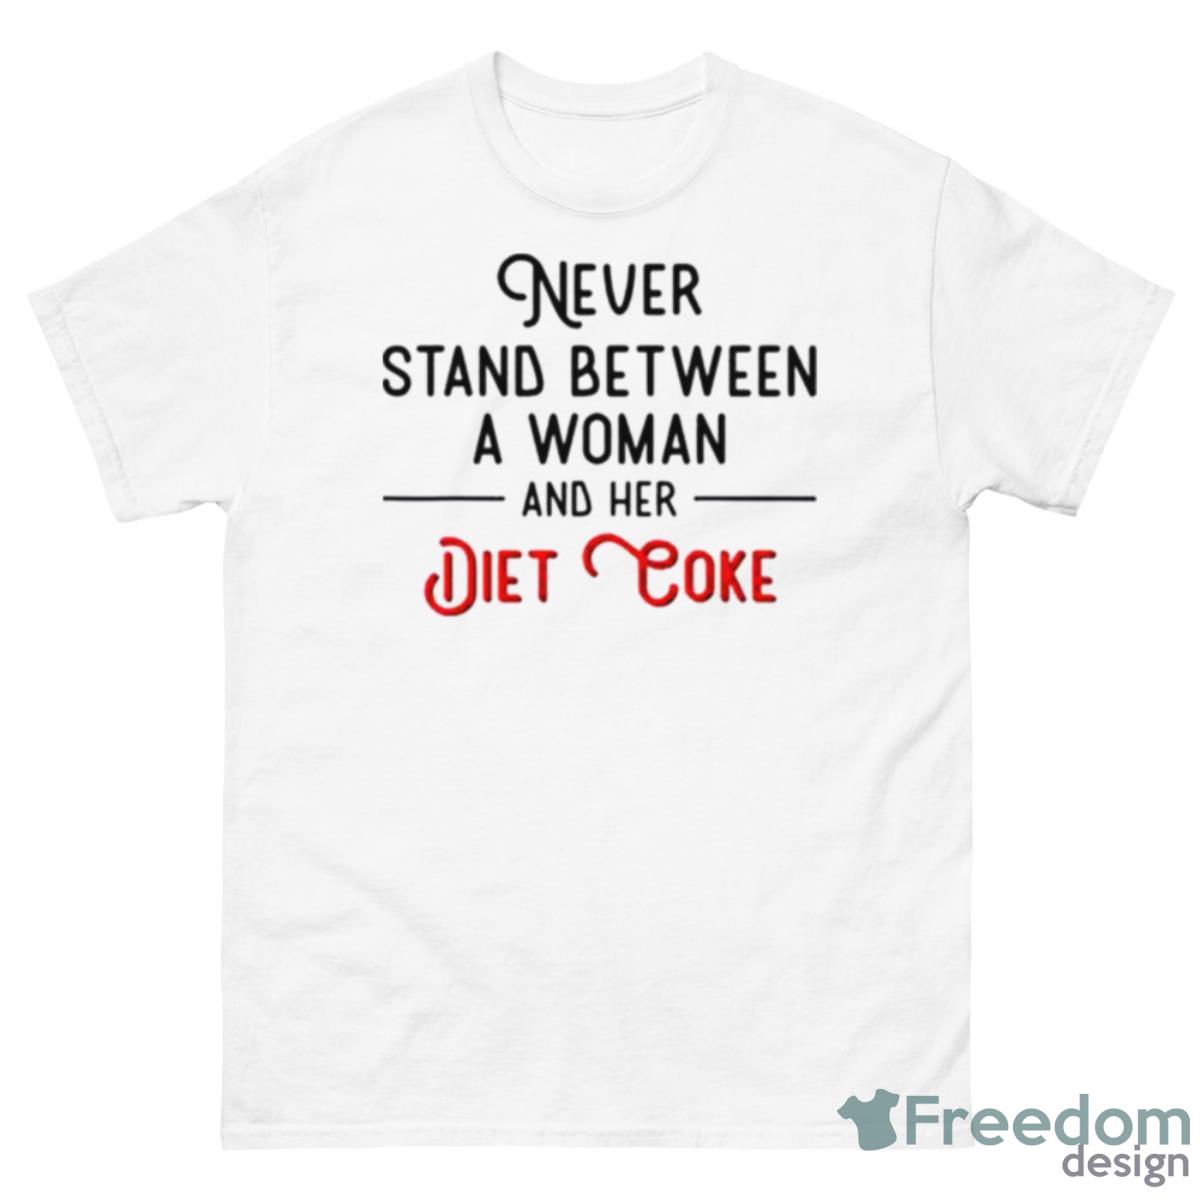 Never Stand Between Women And Her Diet Coke Shirt - 500 Men’s Classic Tee Gildan